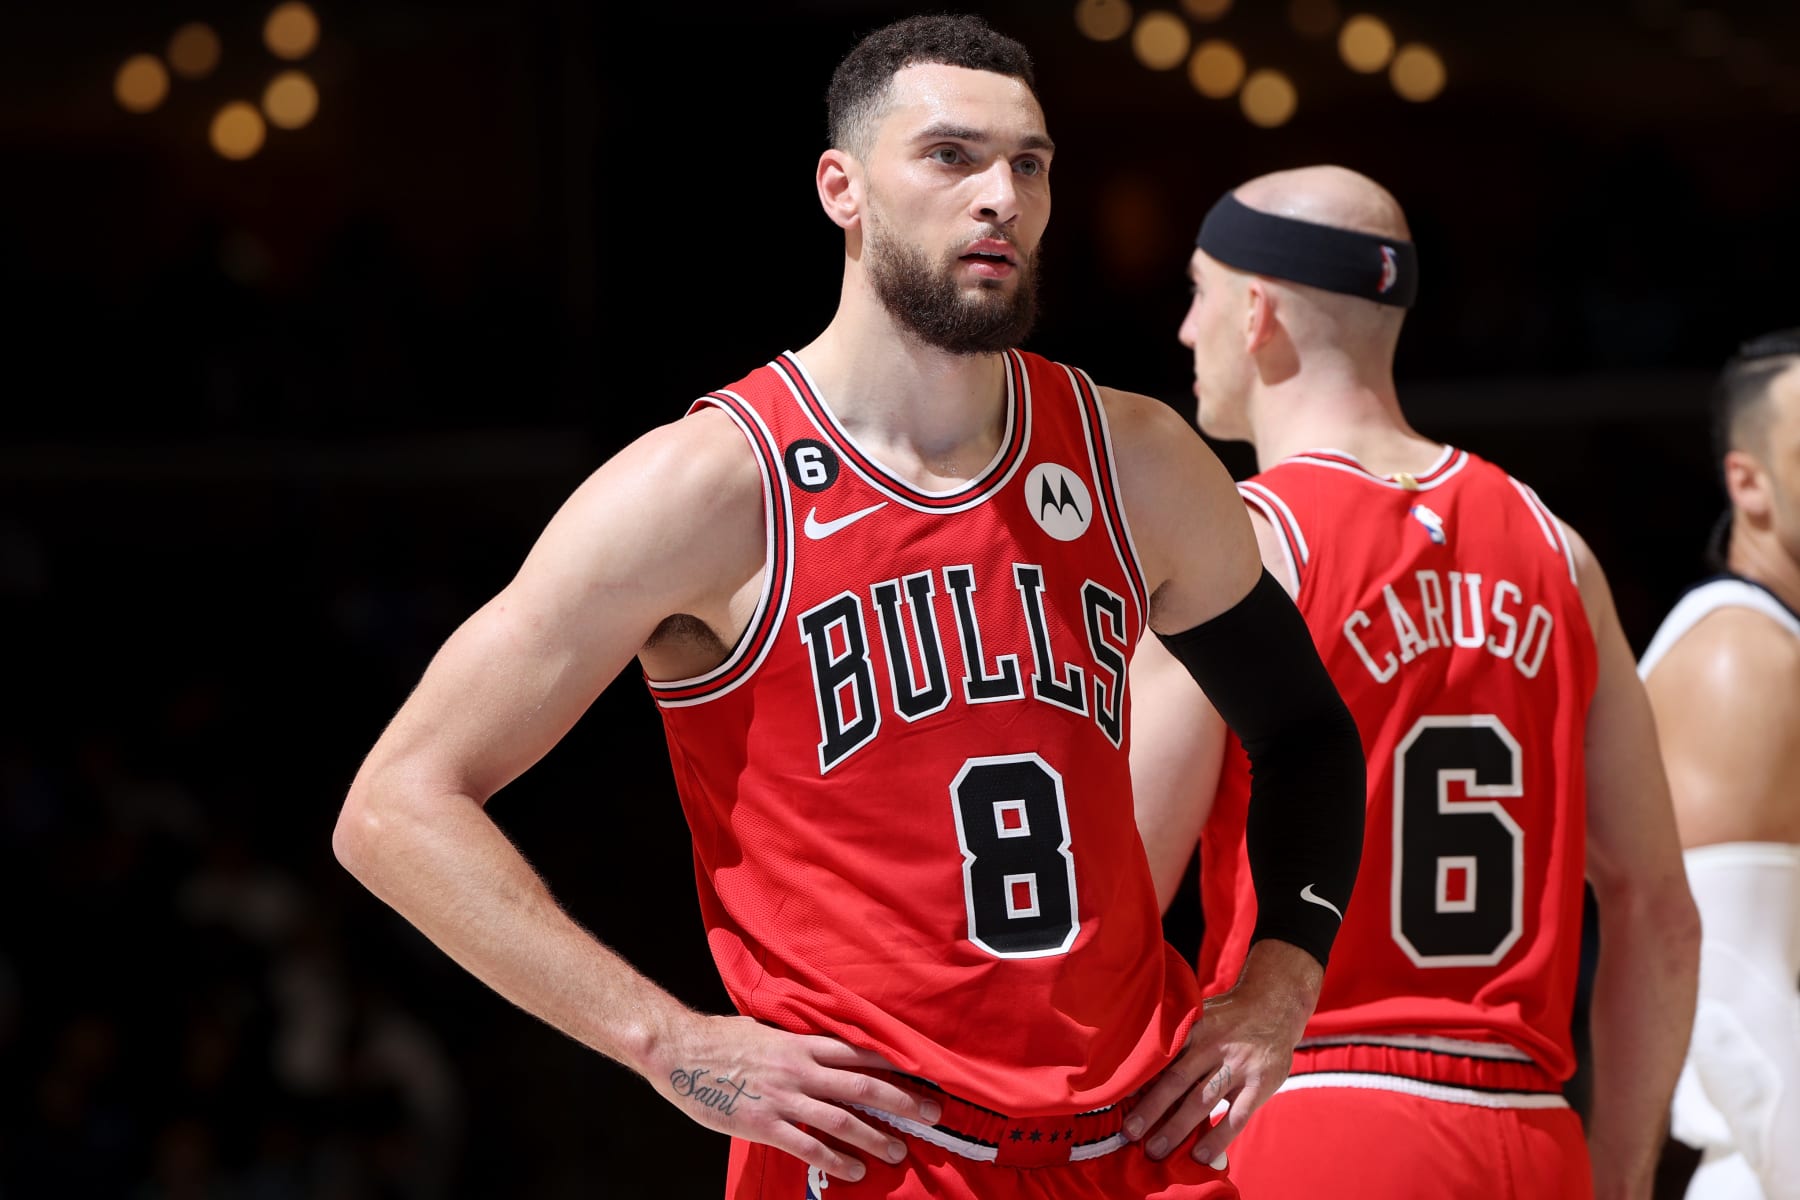 Report: Bulls guard Zach LaVine, Grizzlies rookie Ja Morant